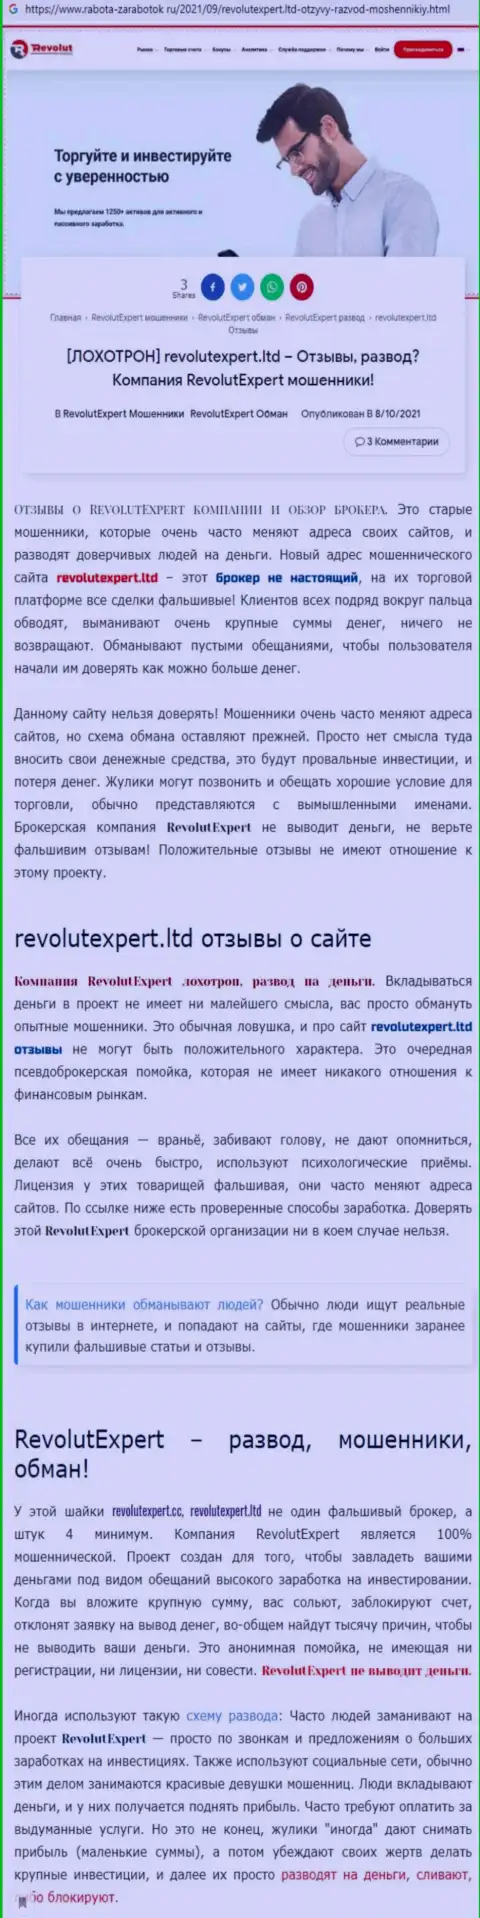 RevolutExpert Ltd это бесспорно МОШЕННИКИ !!! Обзор мошеннических действий организации